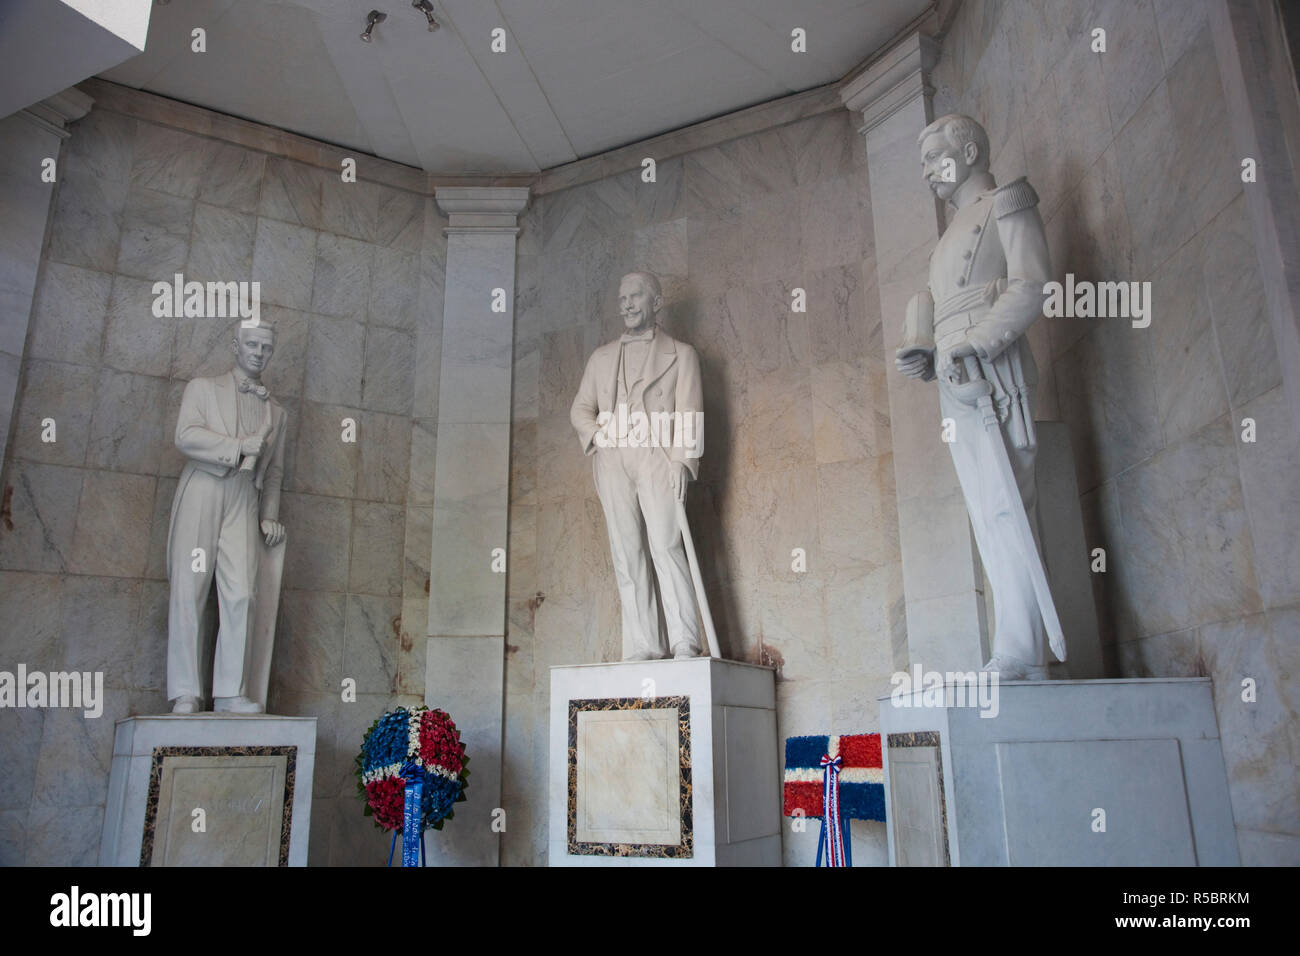 Dominican Republic, Santo Domingo, Zona Colonial, Parque Independencia, Altar de la Patria, monument to three national heroes, Duarte, Sanchez, & Mella Stock Photo